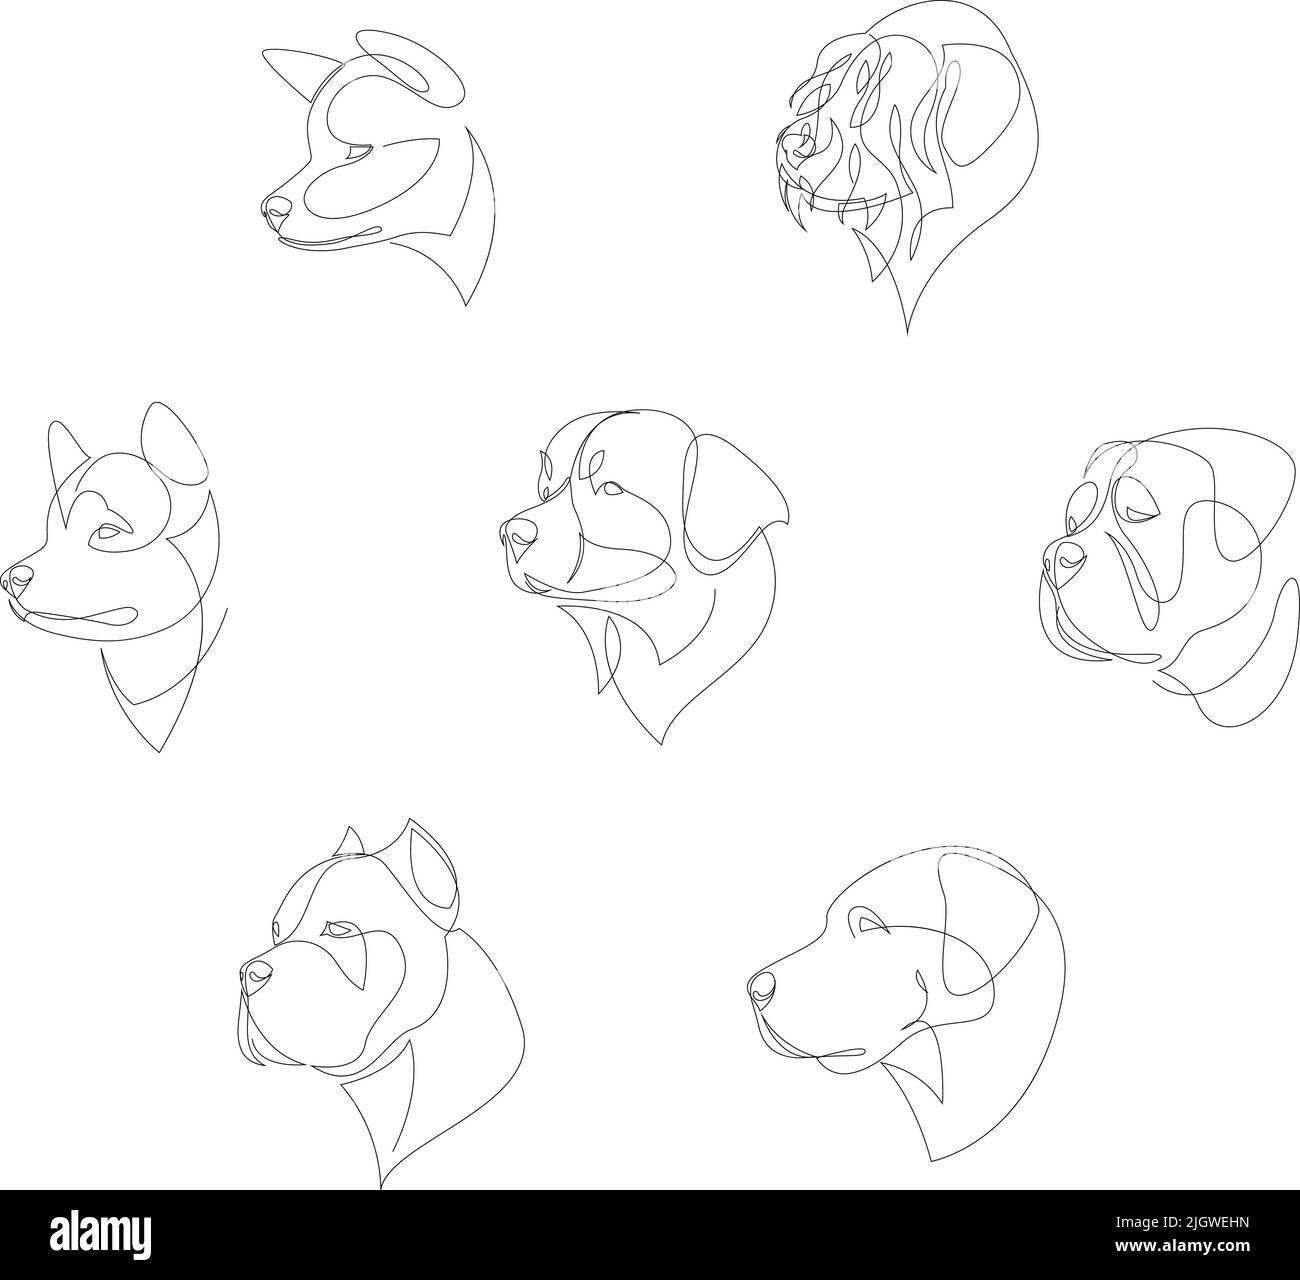 Razze di cani disegnate in stile minimalista set. Cani da una linea. Illustrazione vettoriale Illustrazione Vettoriale